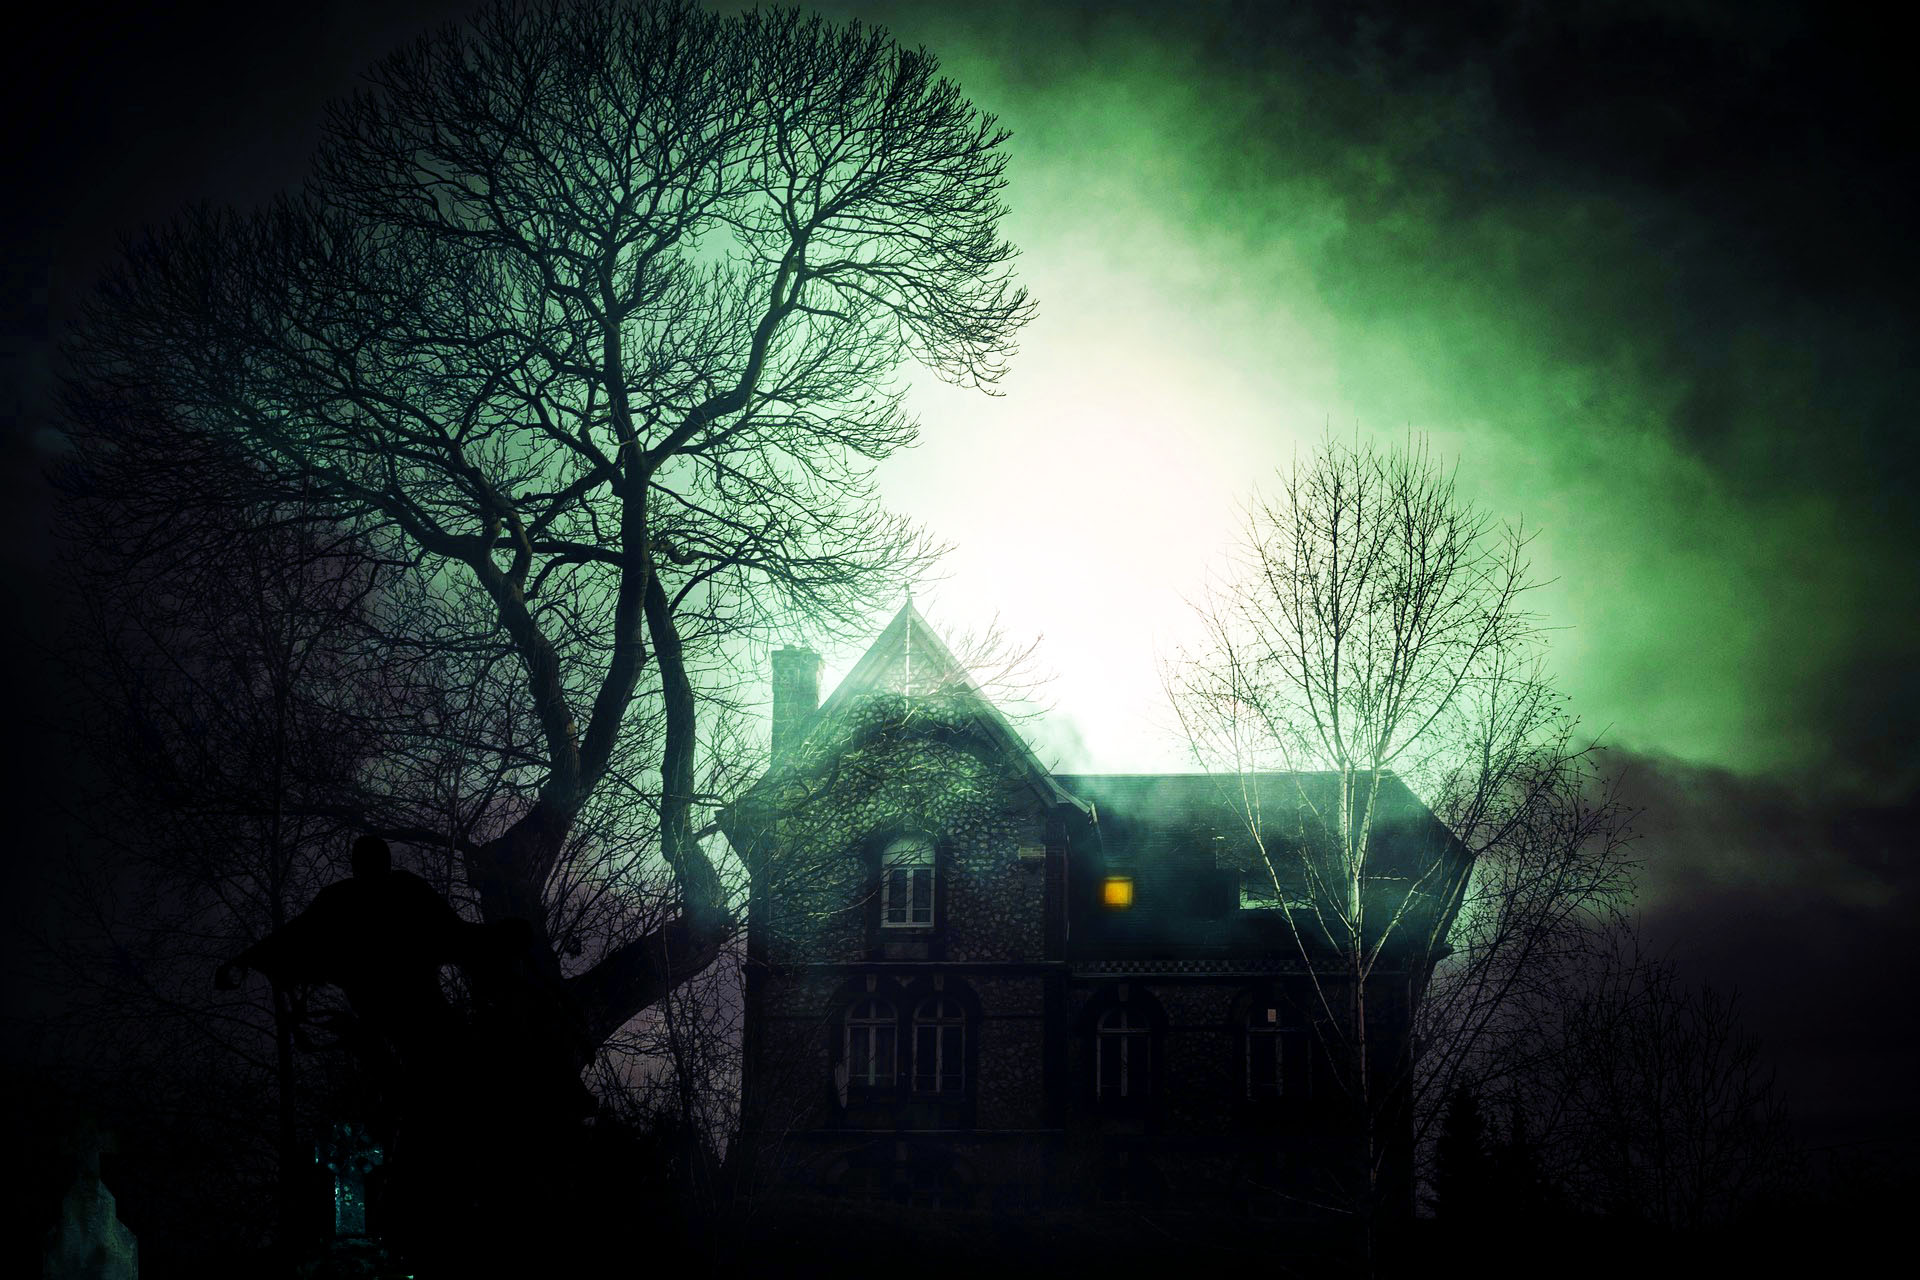 Imagen de una Casa del terror o casa encantada inspirada en la novela de terror Descenso al infierno